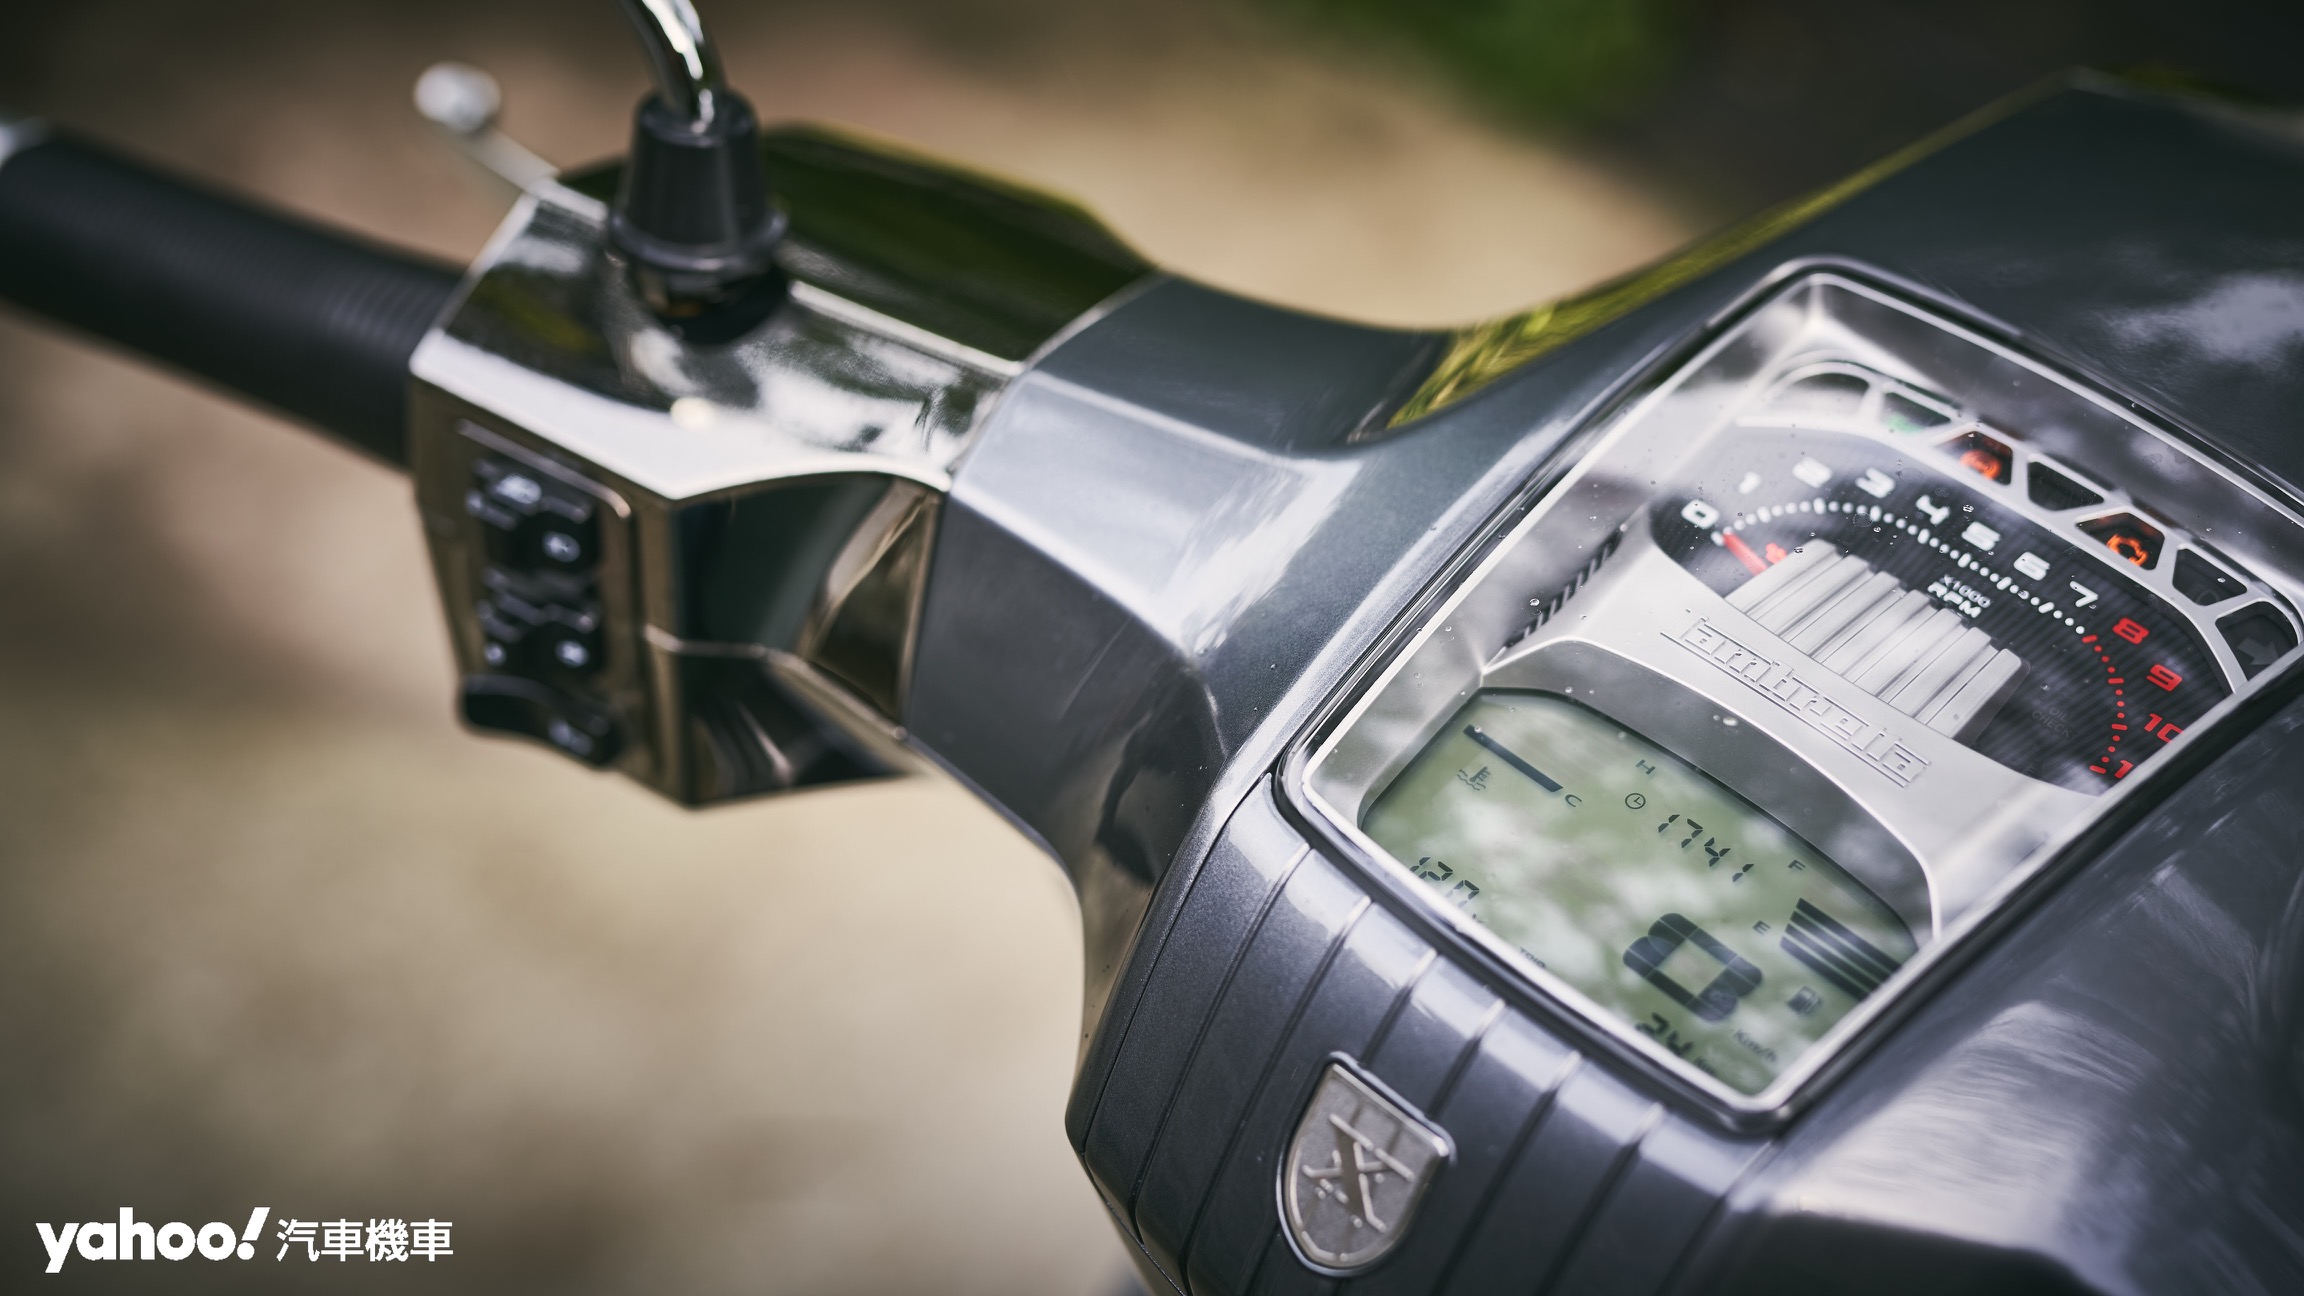 Lambretta X300採用較為傳統的指針轉速錶搭配液晶資訊顯示幕做為視覺介面。